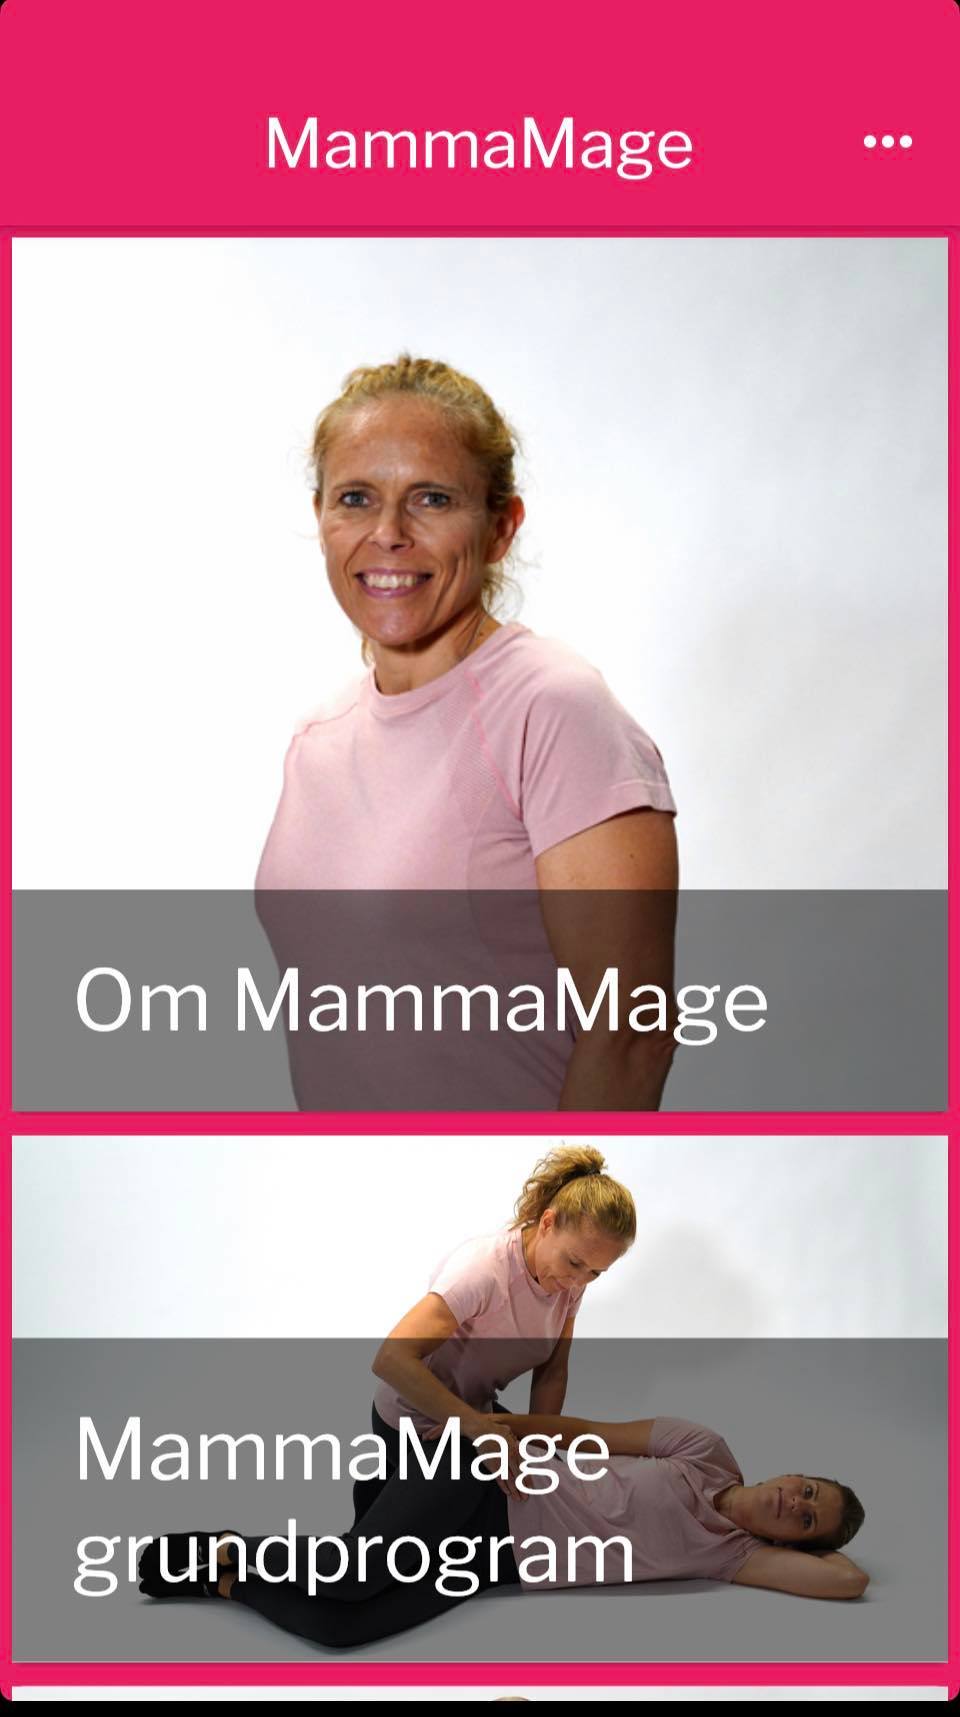 MammaMage 2.0 i full funktion igen